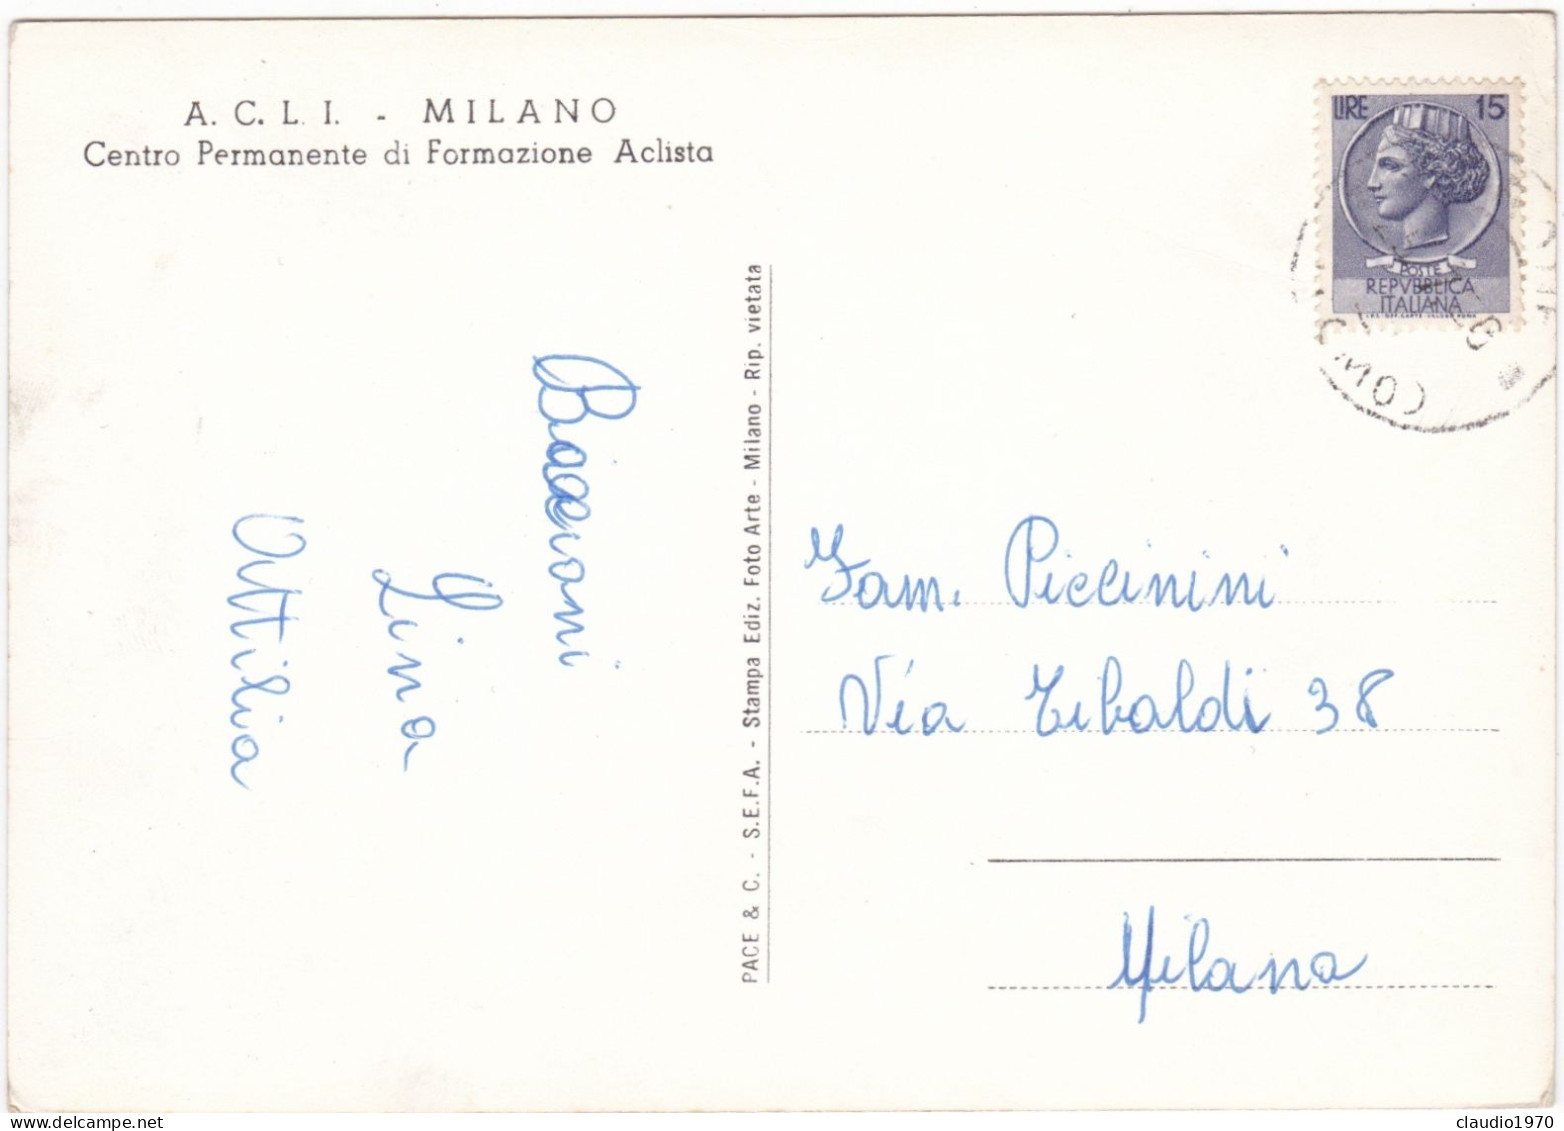 MILANO - CARTOLINA - A.C.L.I. MILANO - CENTRO PERMANENTE DI FOMAZIONE ACLISTA - VIAGGIATA PER MILANO - Milano (Milan)